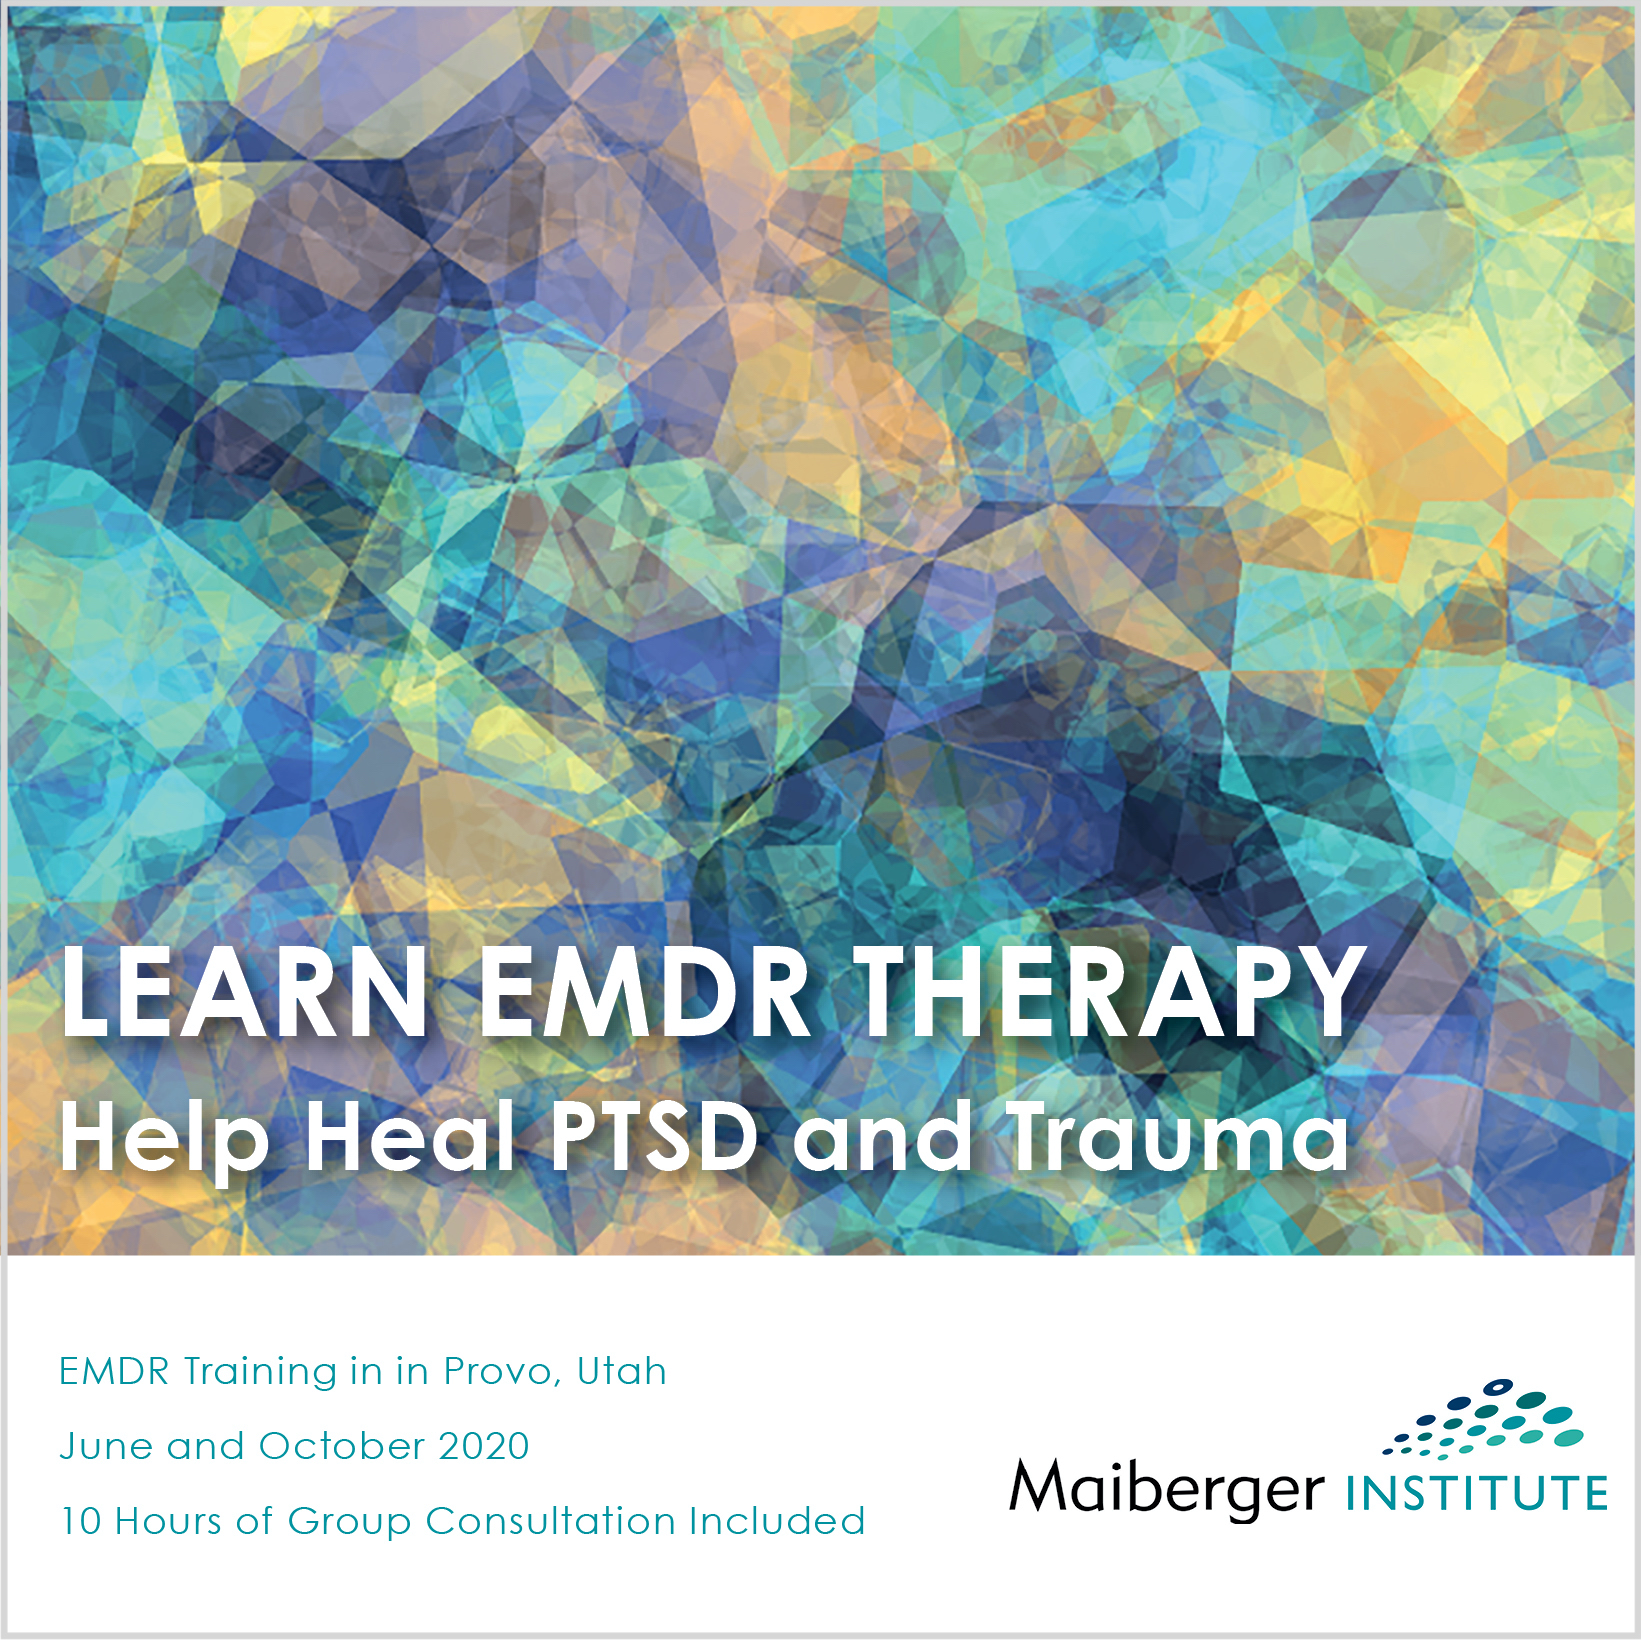 EMDR Training in Provo, Utah June and October 2020 Maiberger Institute